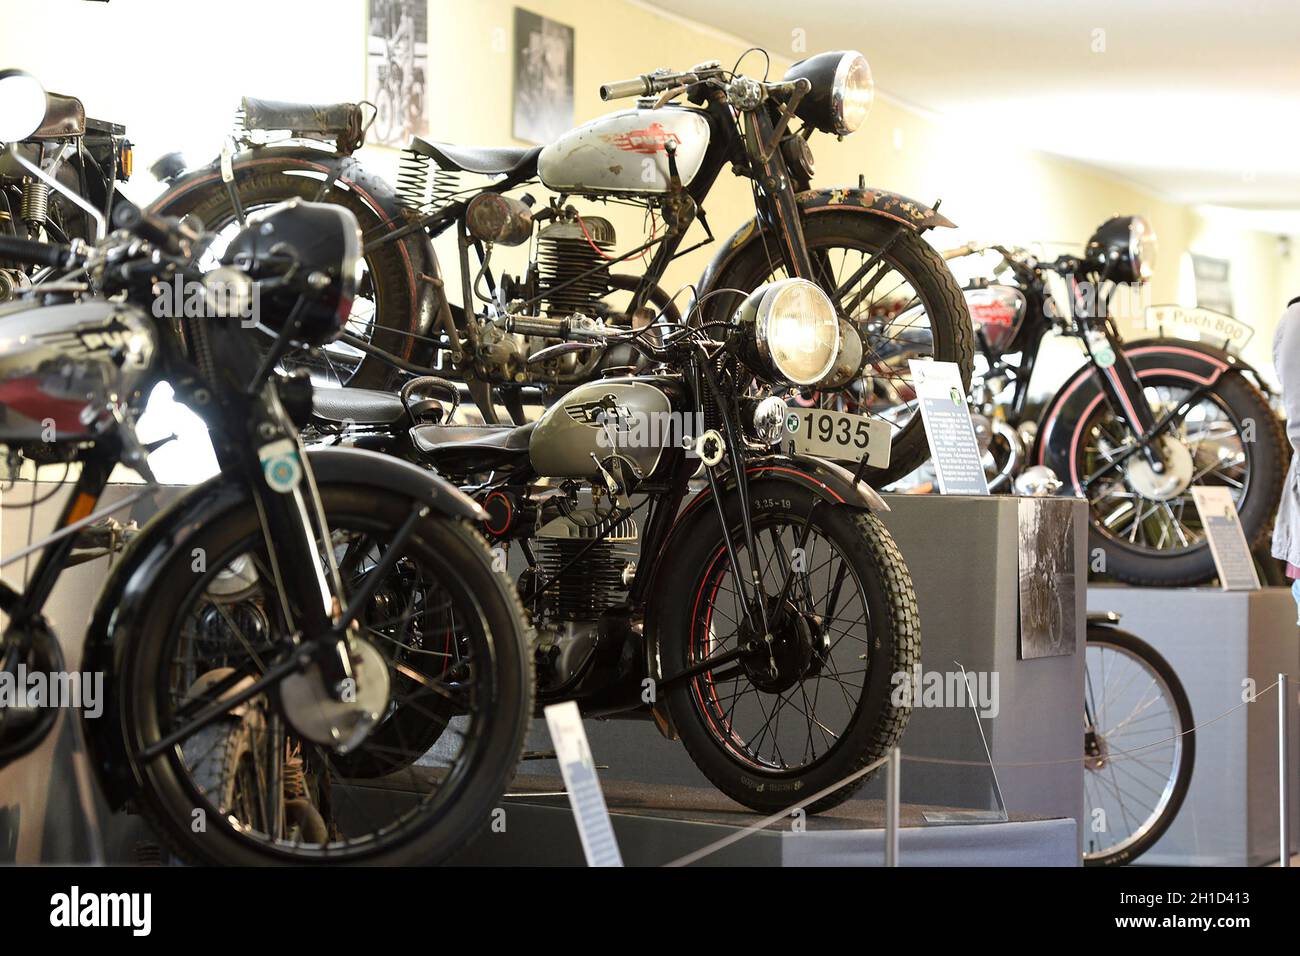 Die Puch-Werke, gegründet 1899 von Johann Puch, waren ein österreichisches Unternehmen, das Fahrräder, Motorfahrräder, Motoren, Motorräder und Automob Stock Photo